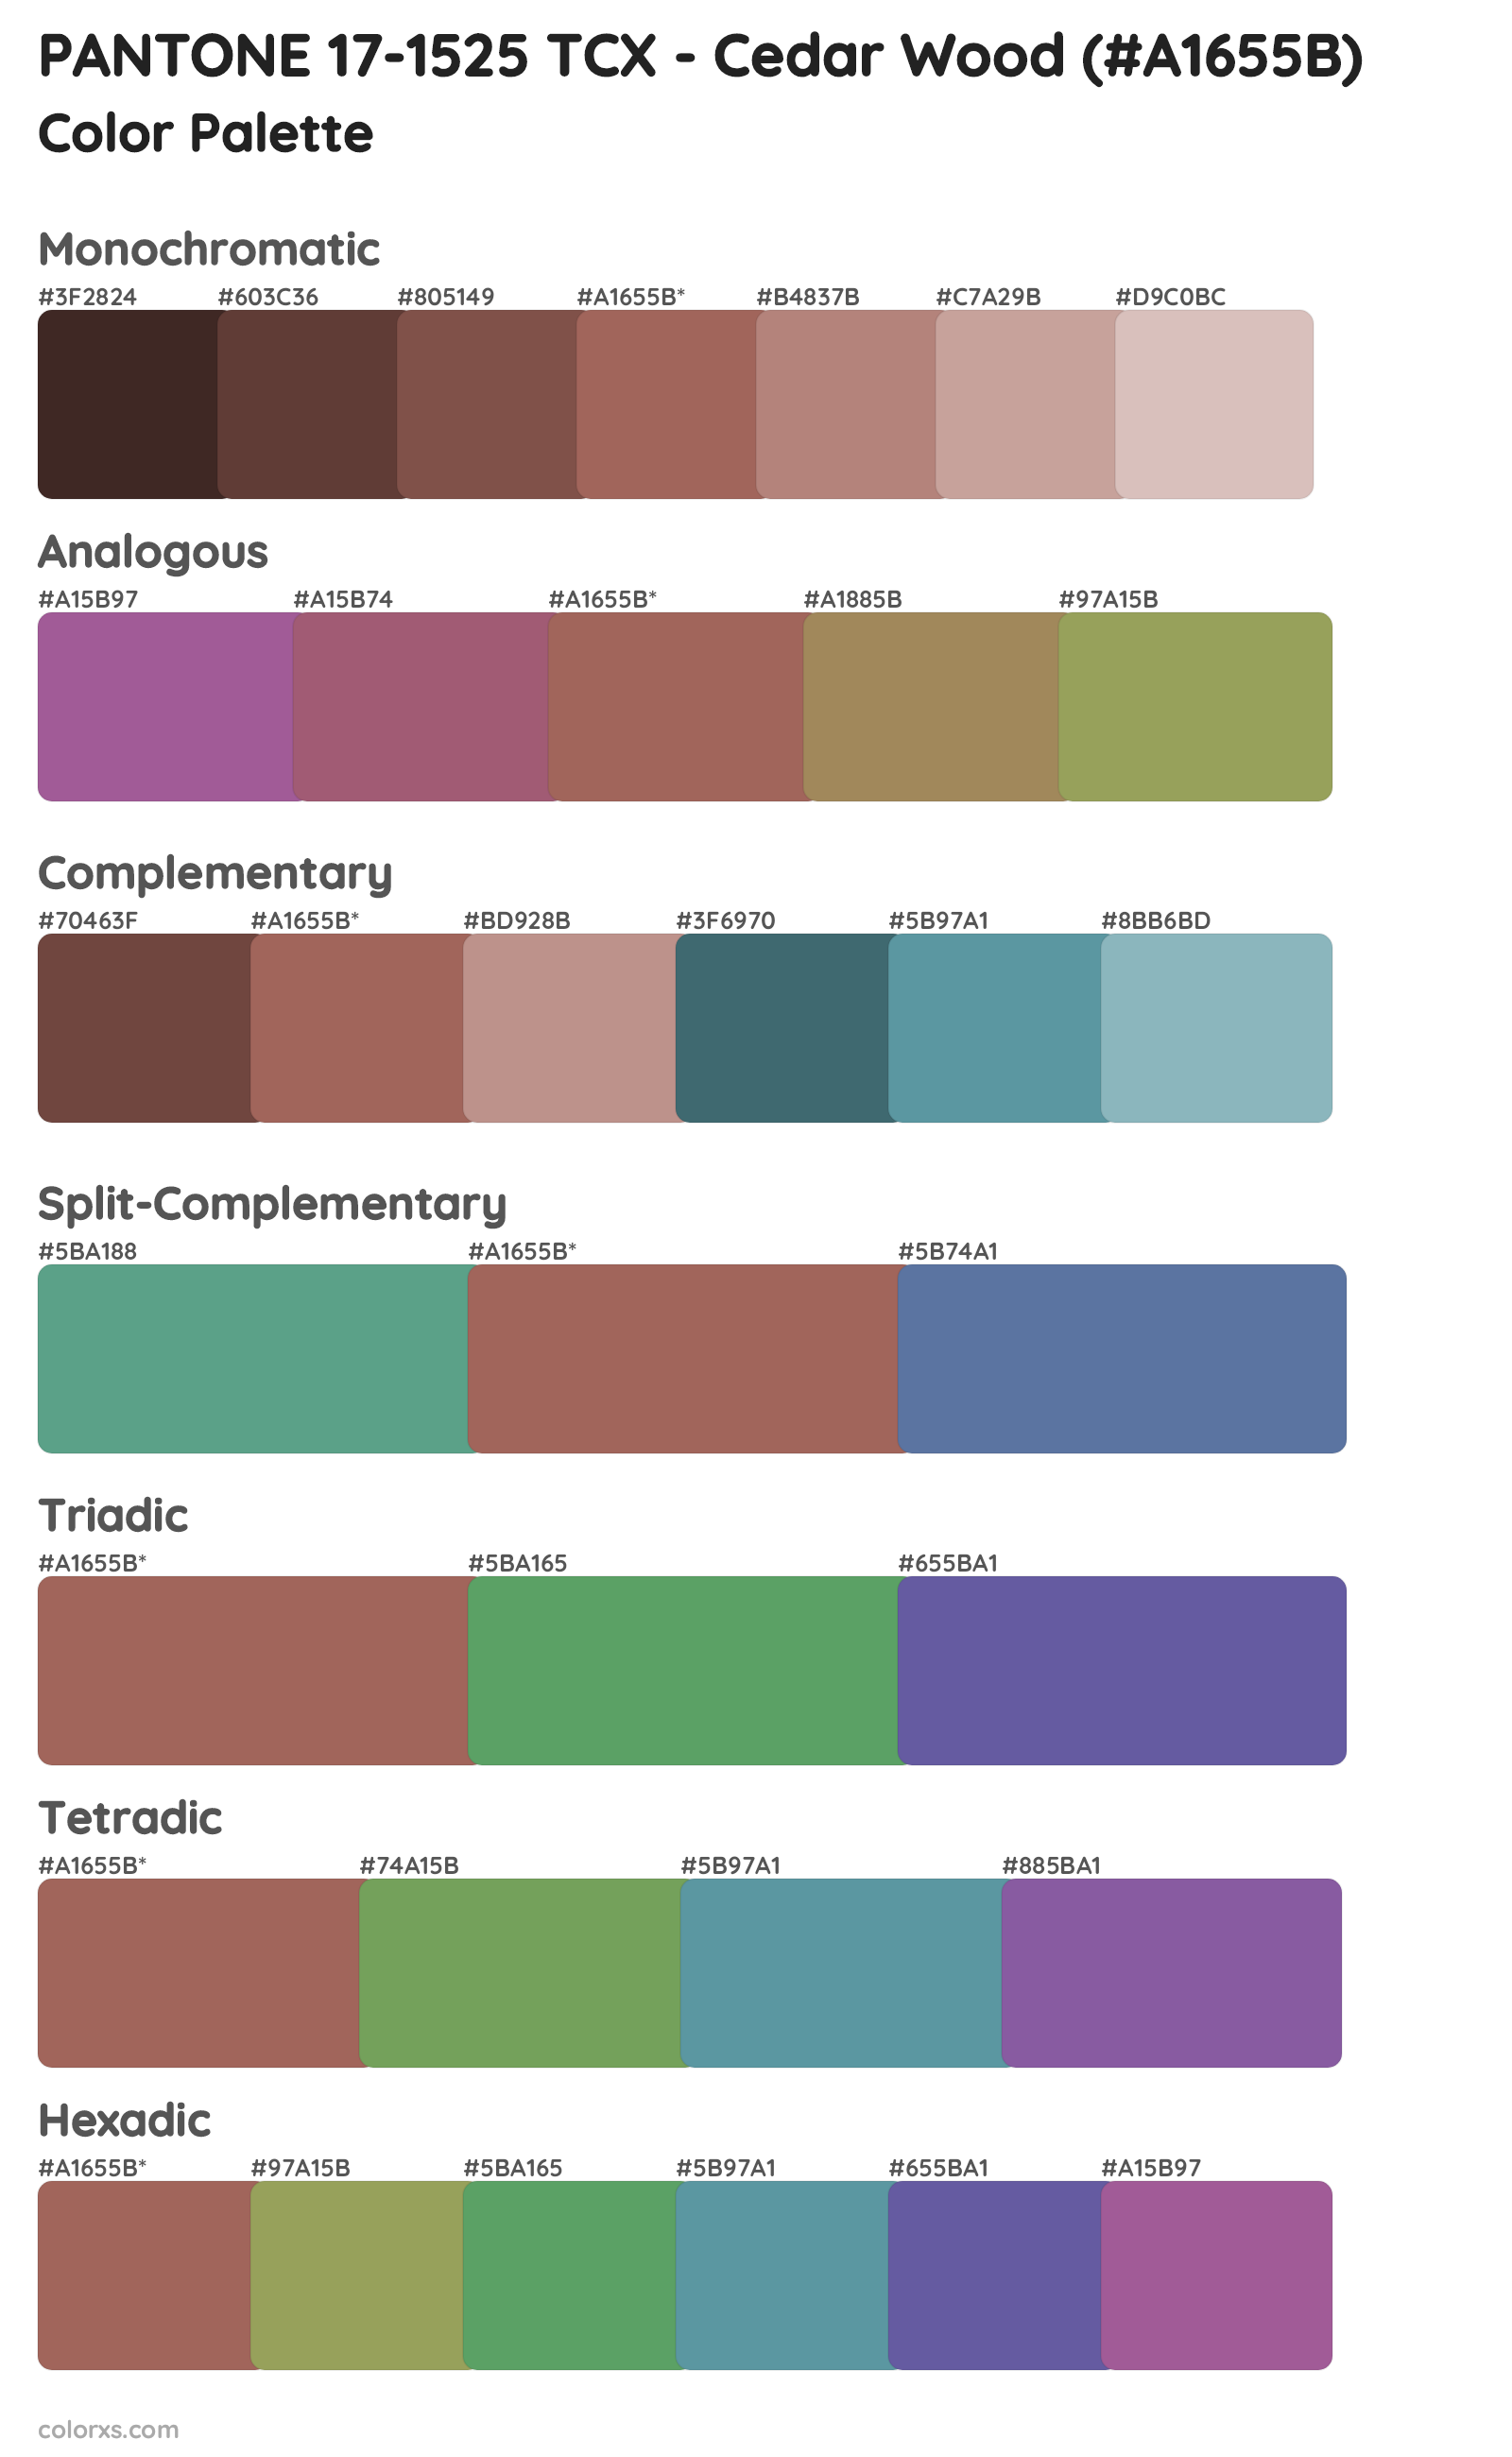 PANTONE 17-1525 TCX - Cedar Wood Color Scheme Palettes